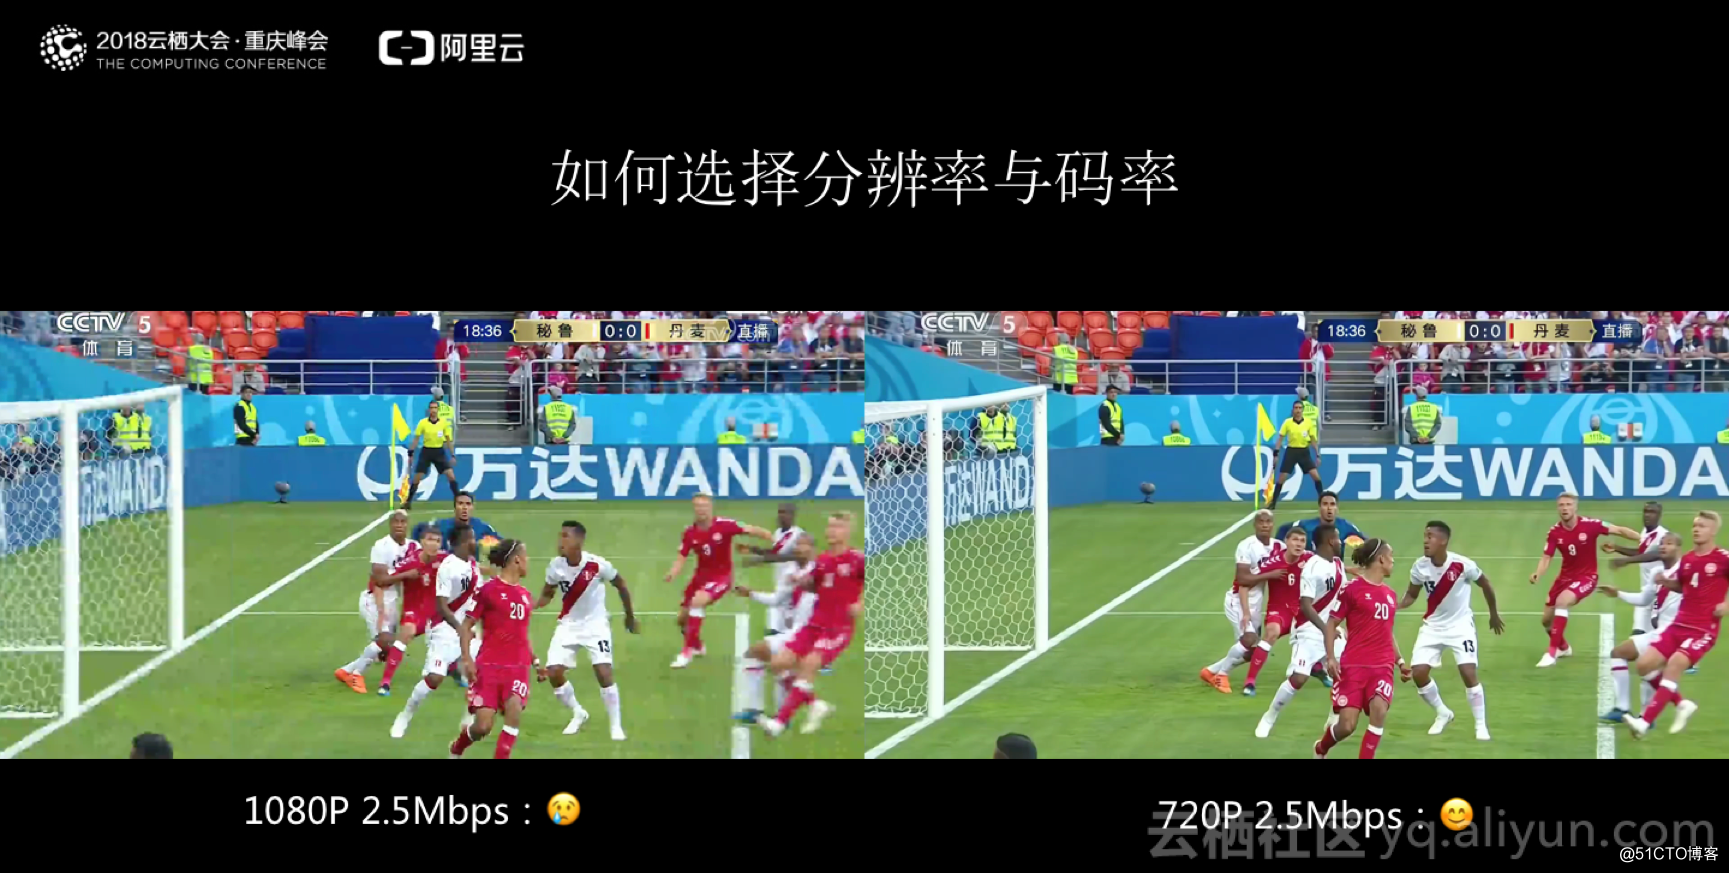 解析世界杯超大規模直播場景下的碼率控制